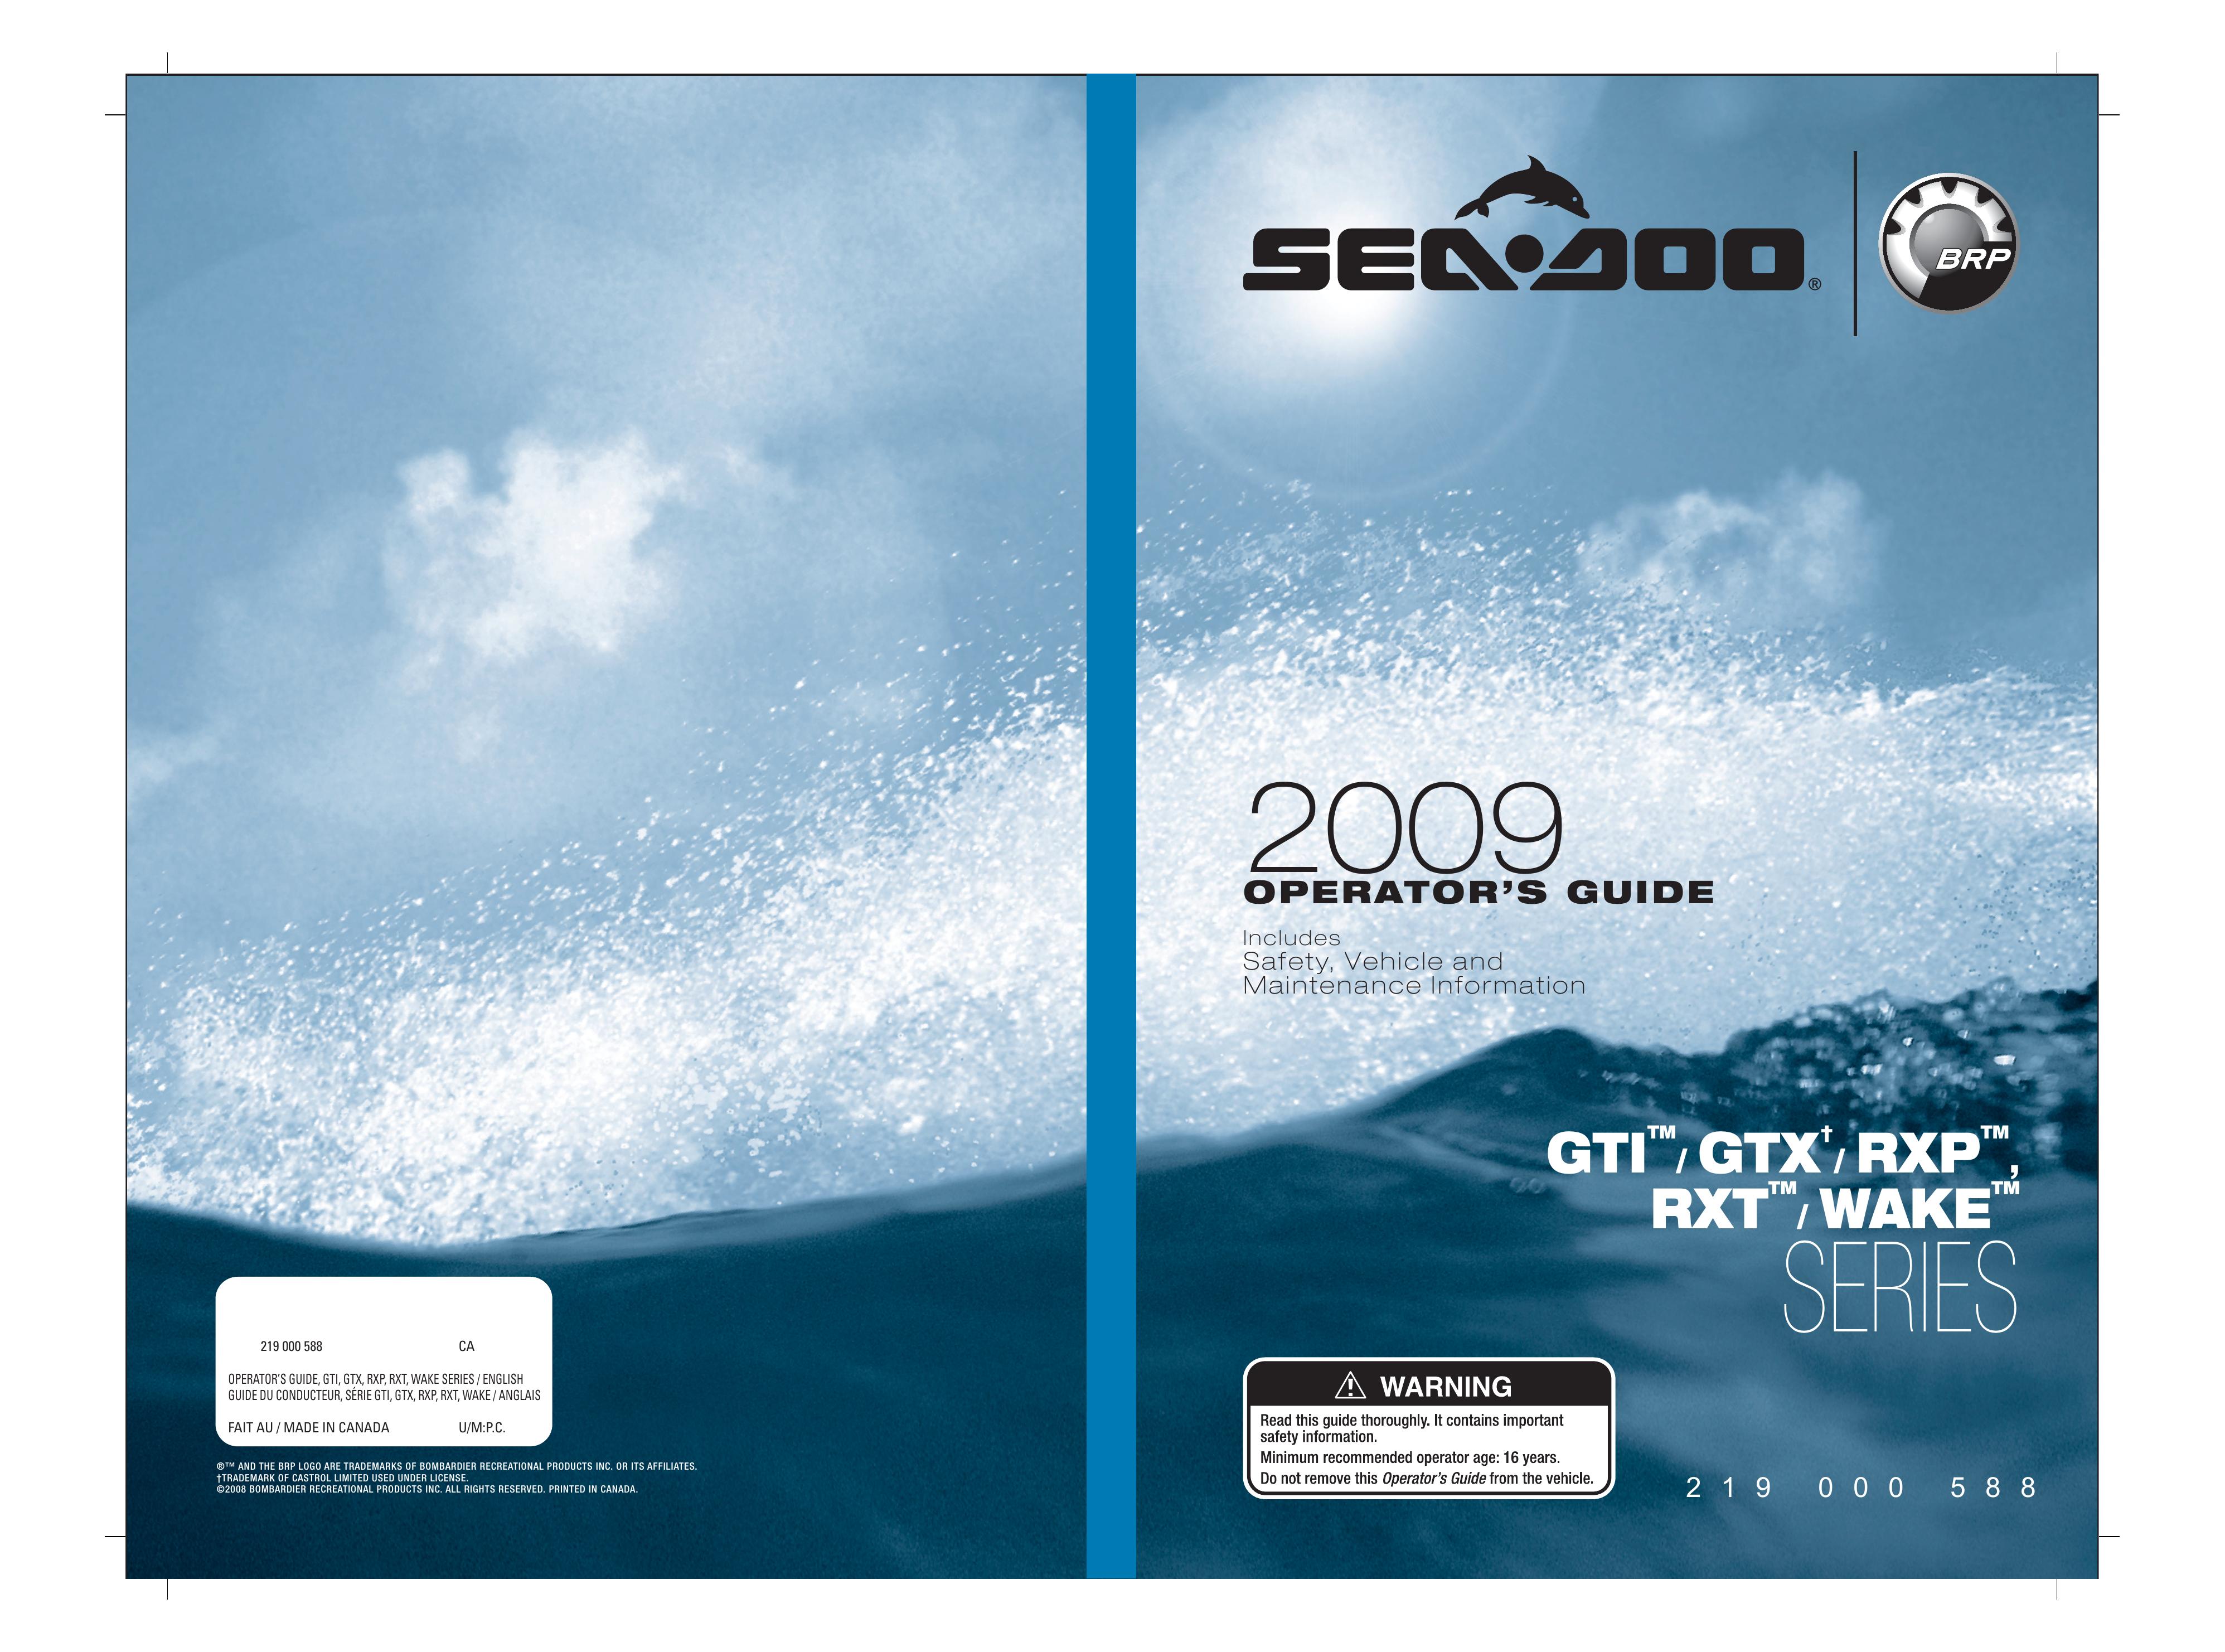 Ski-Doo RXP Series Jet Ski User Manual